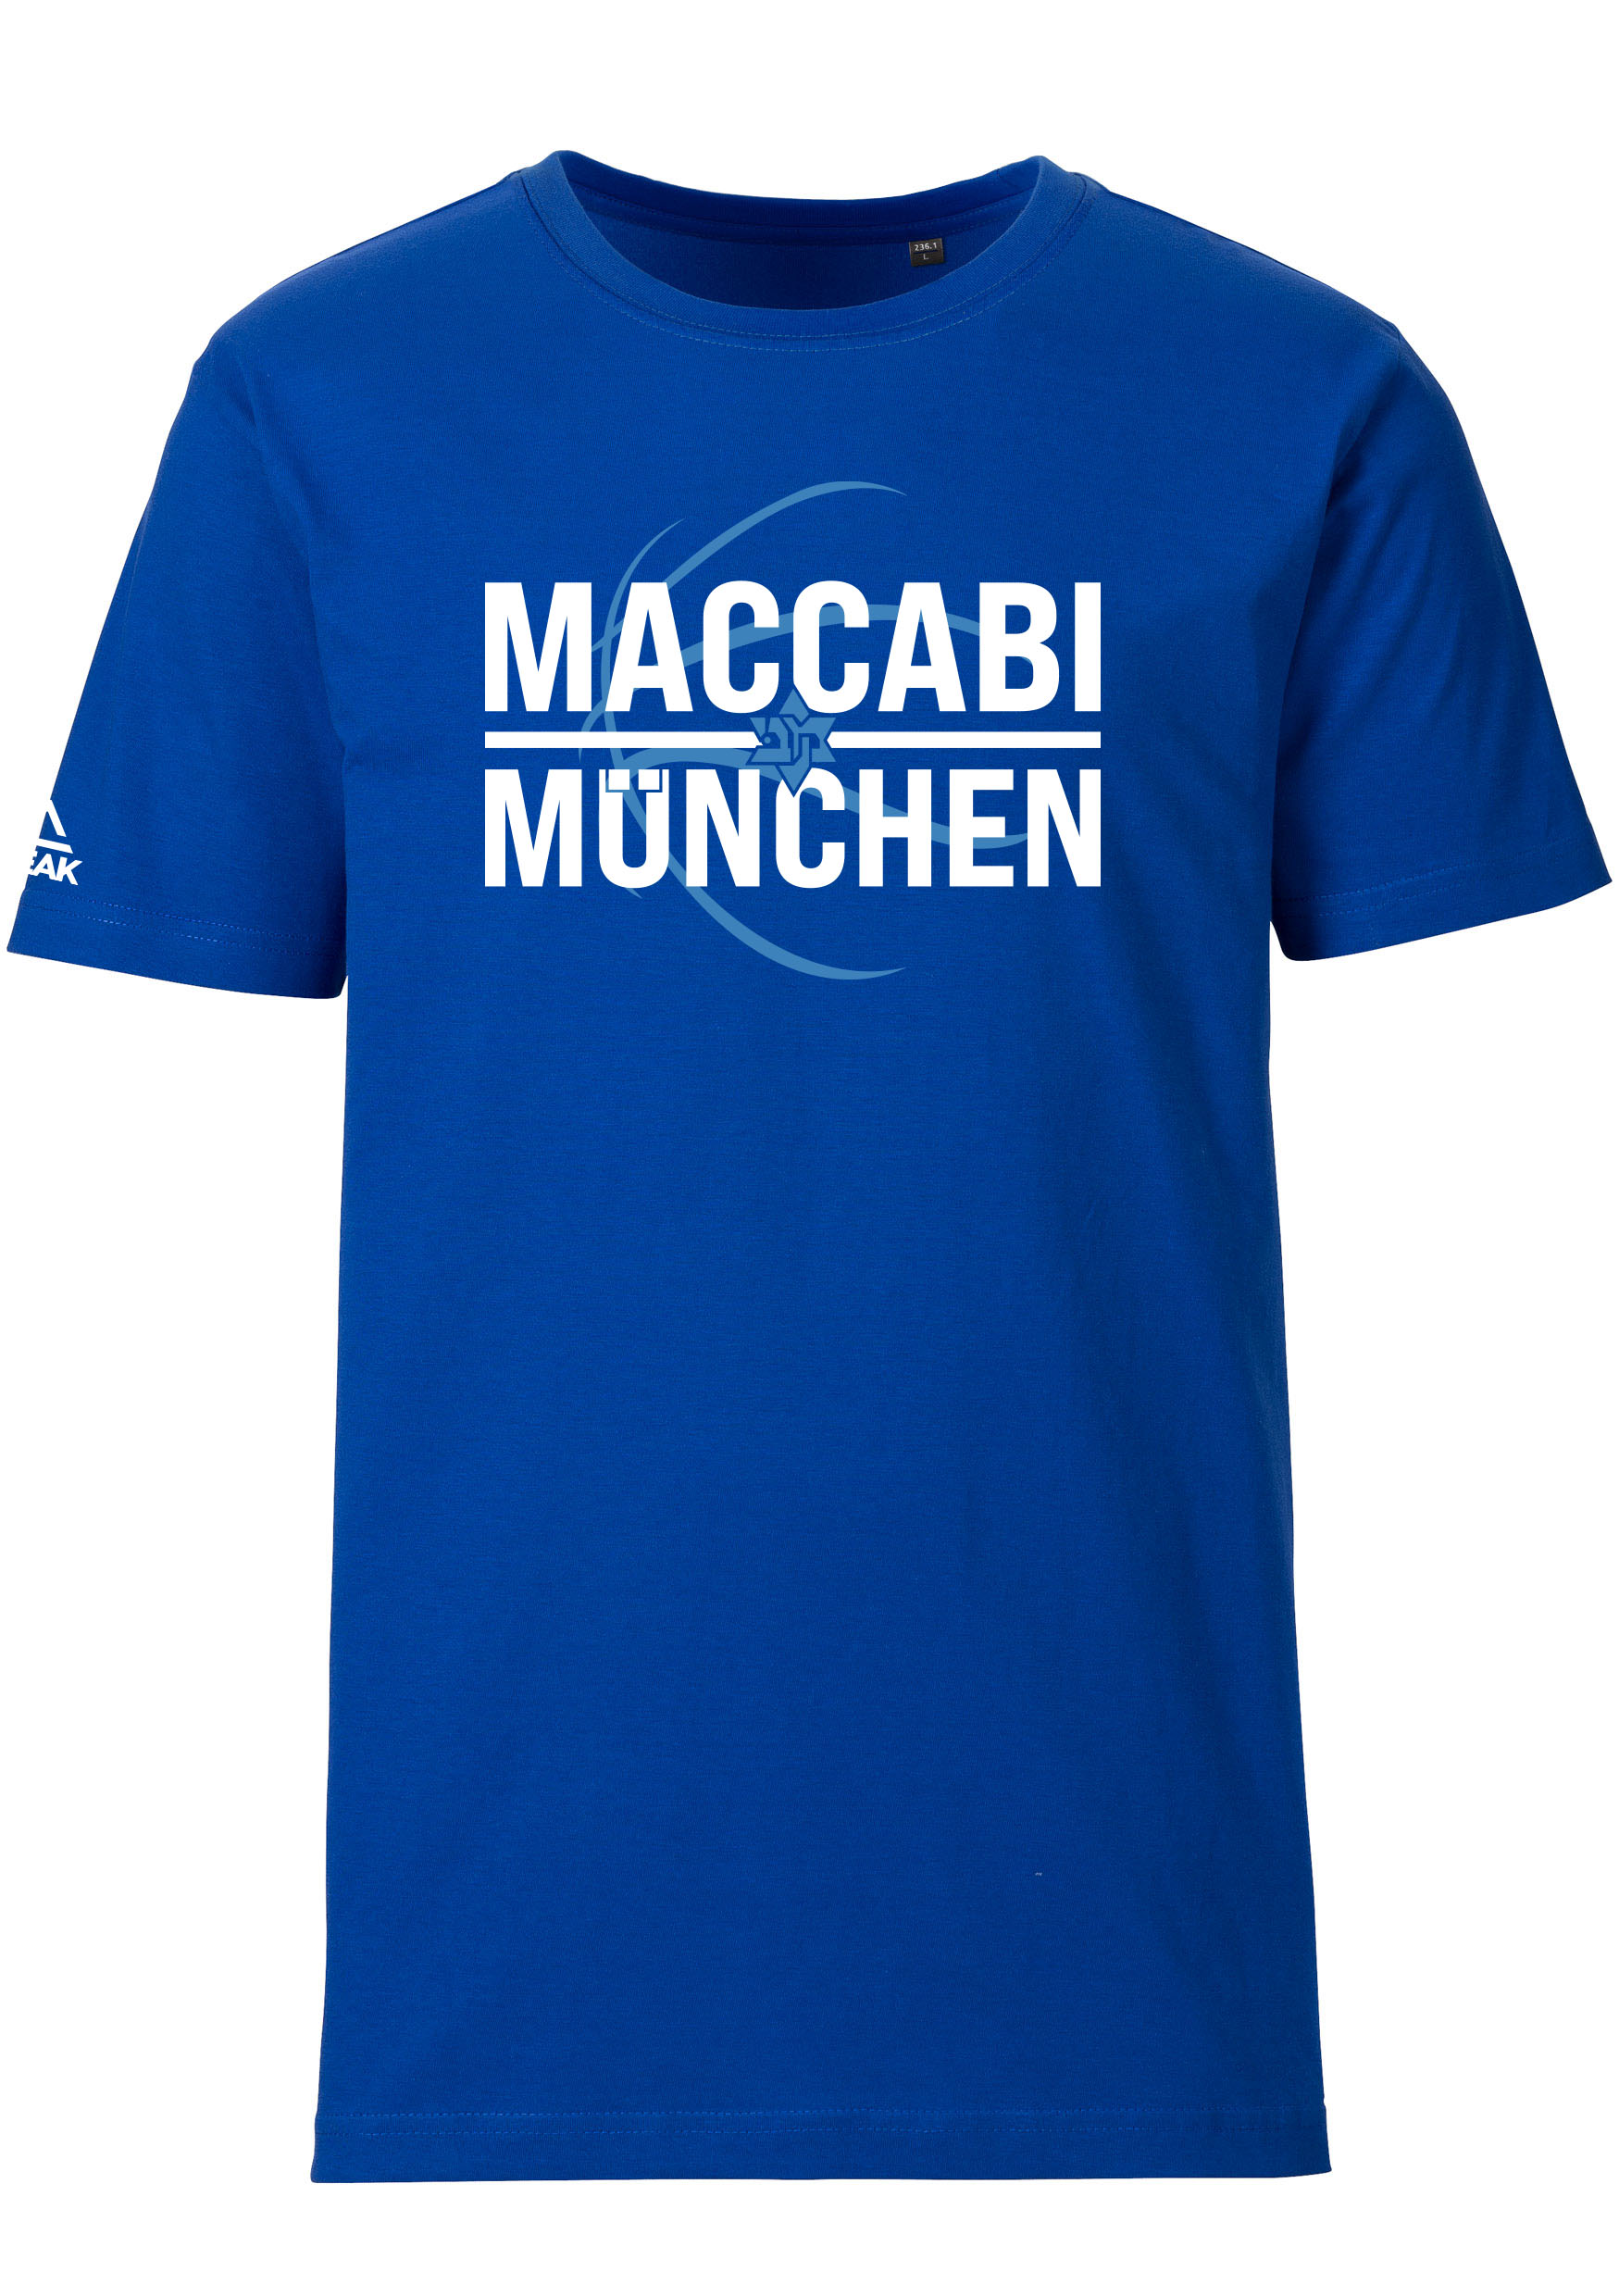 Maccabi München T-Shirt Kids